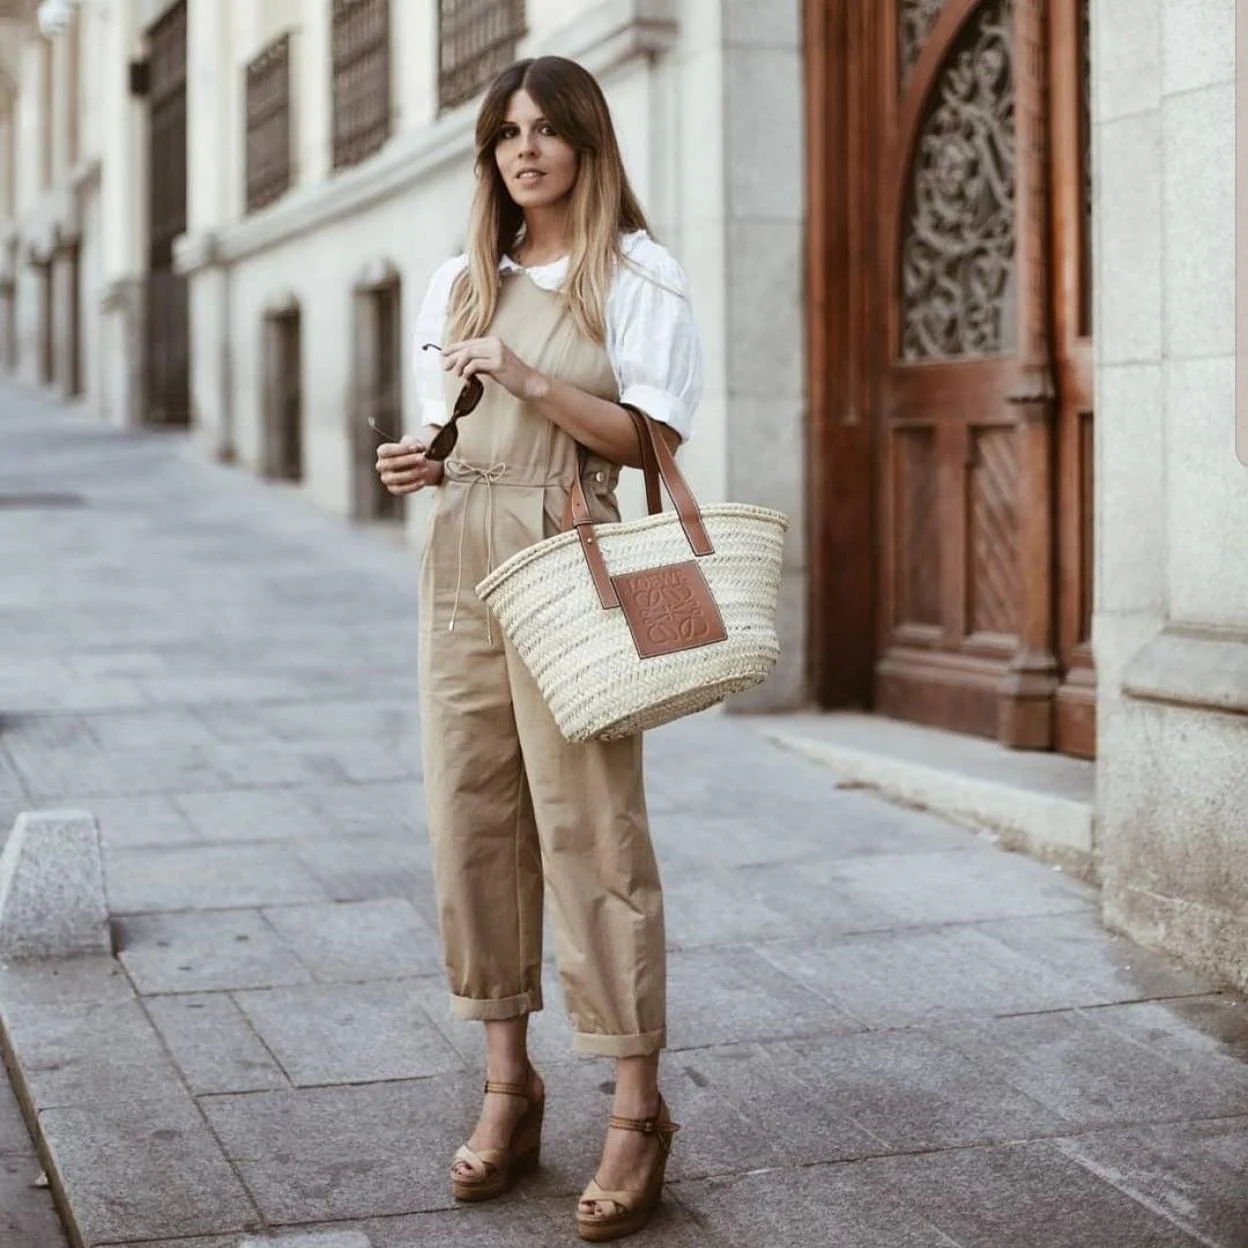 El bolso de rafia de lujo, que está arrasando en Instagram, ahora puede ser tuyo por menos euros. ¡No lo dejes escapar! | Mujer Hoy